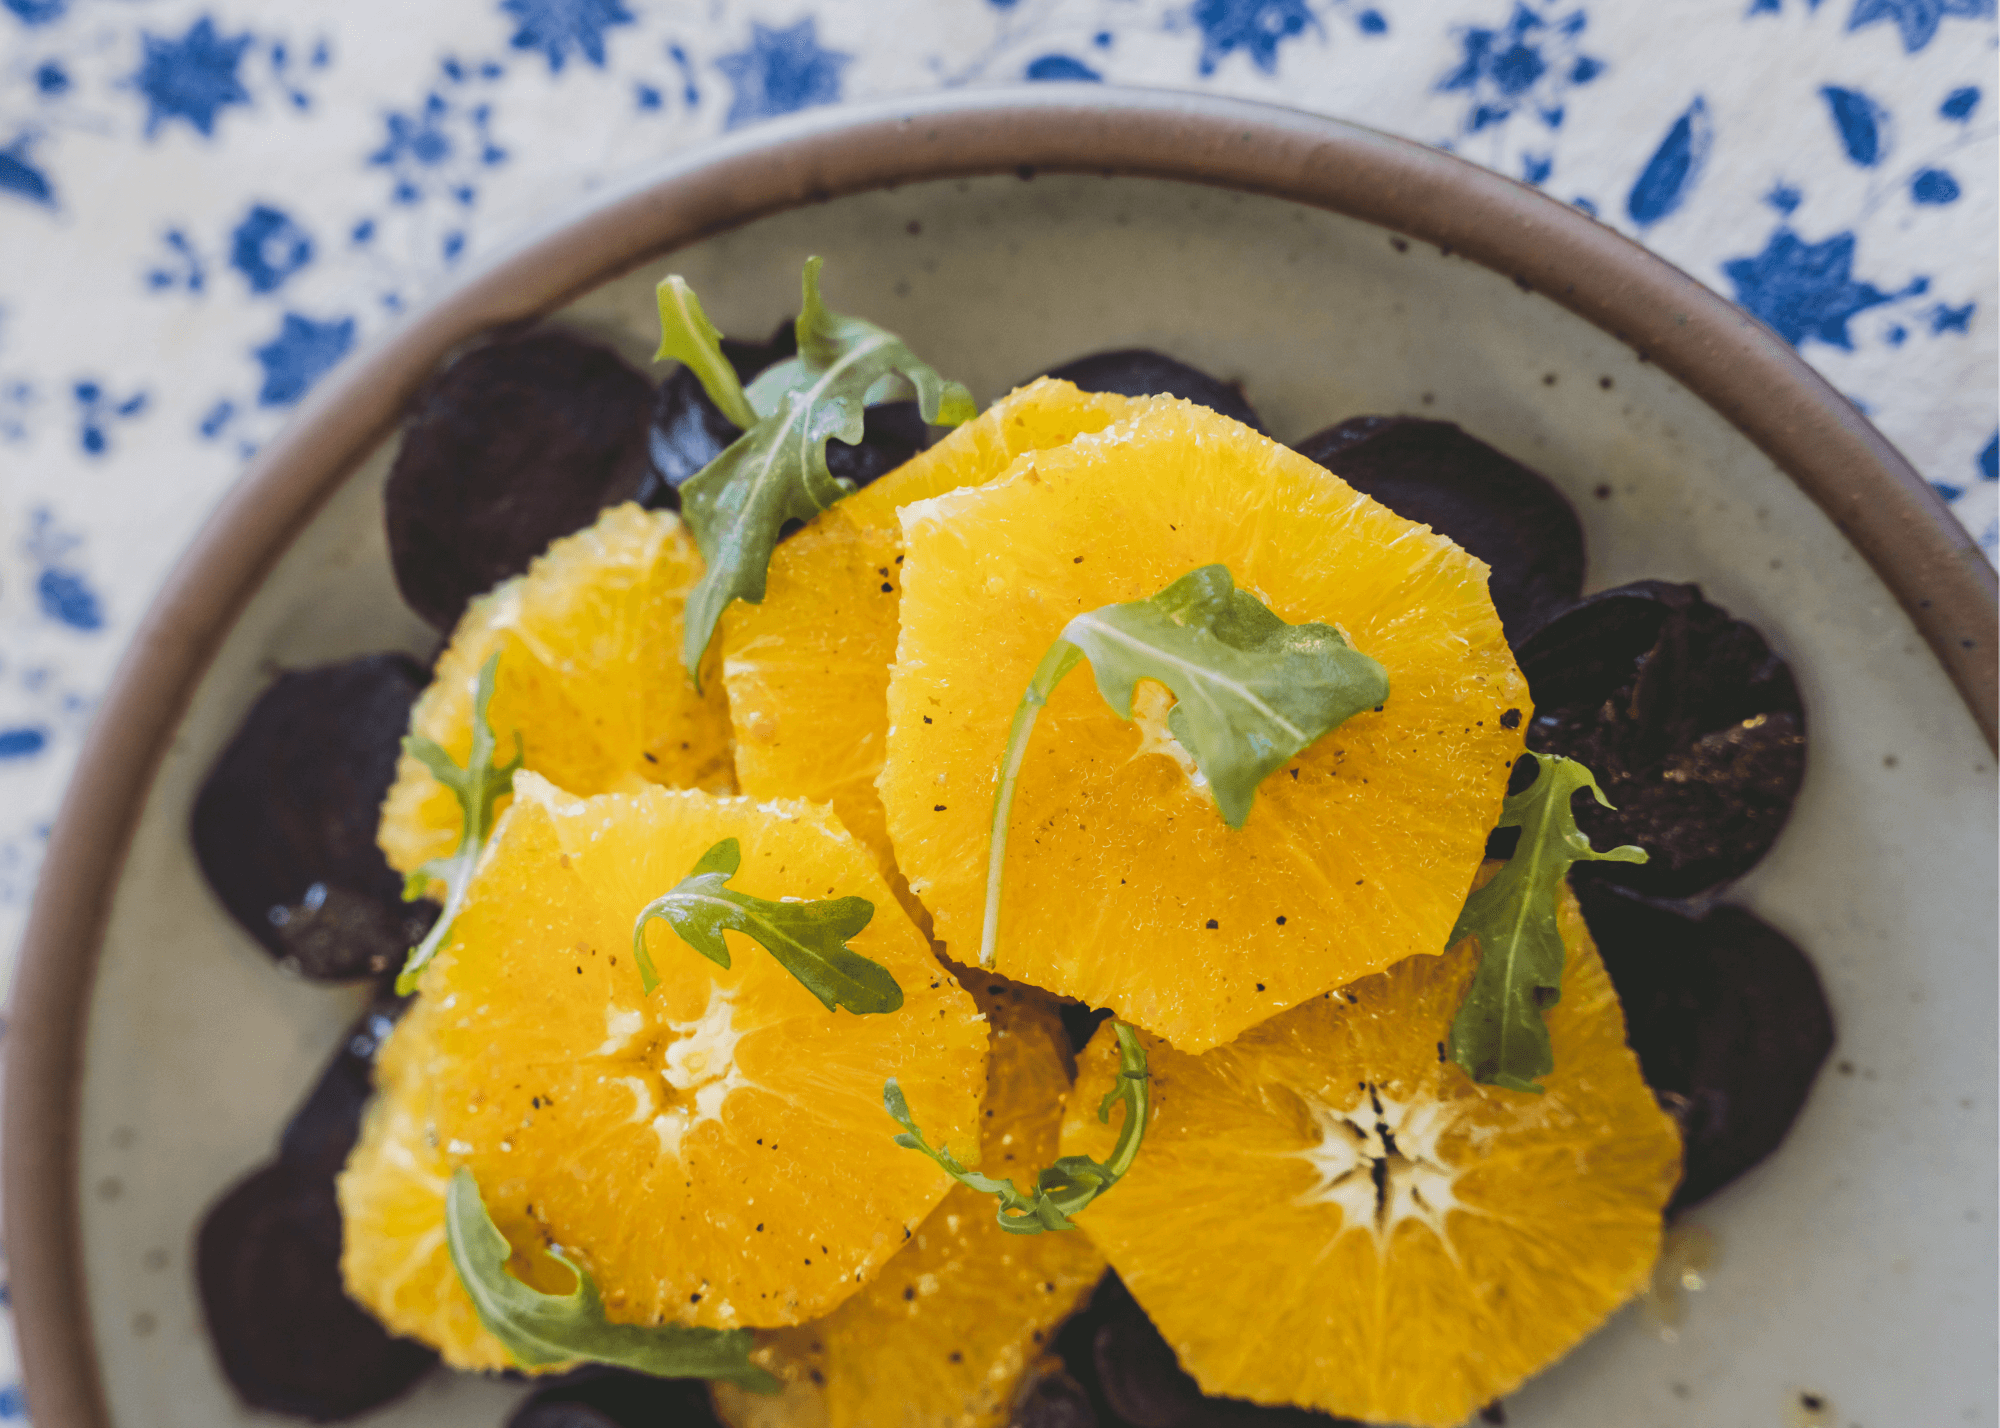 Recipes Using Oranges That Aren’t Dessert